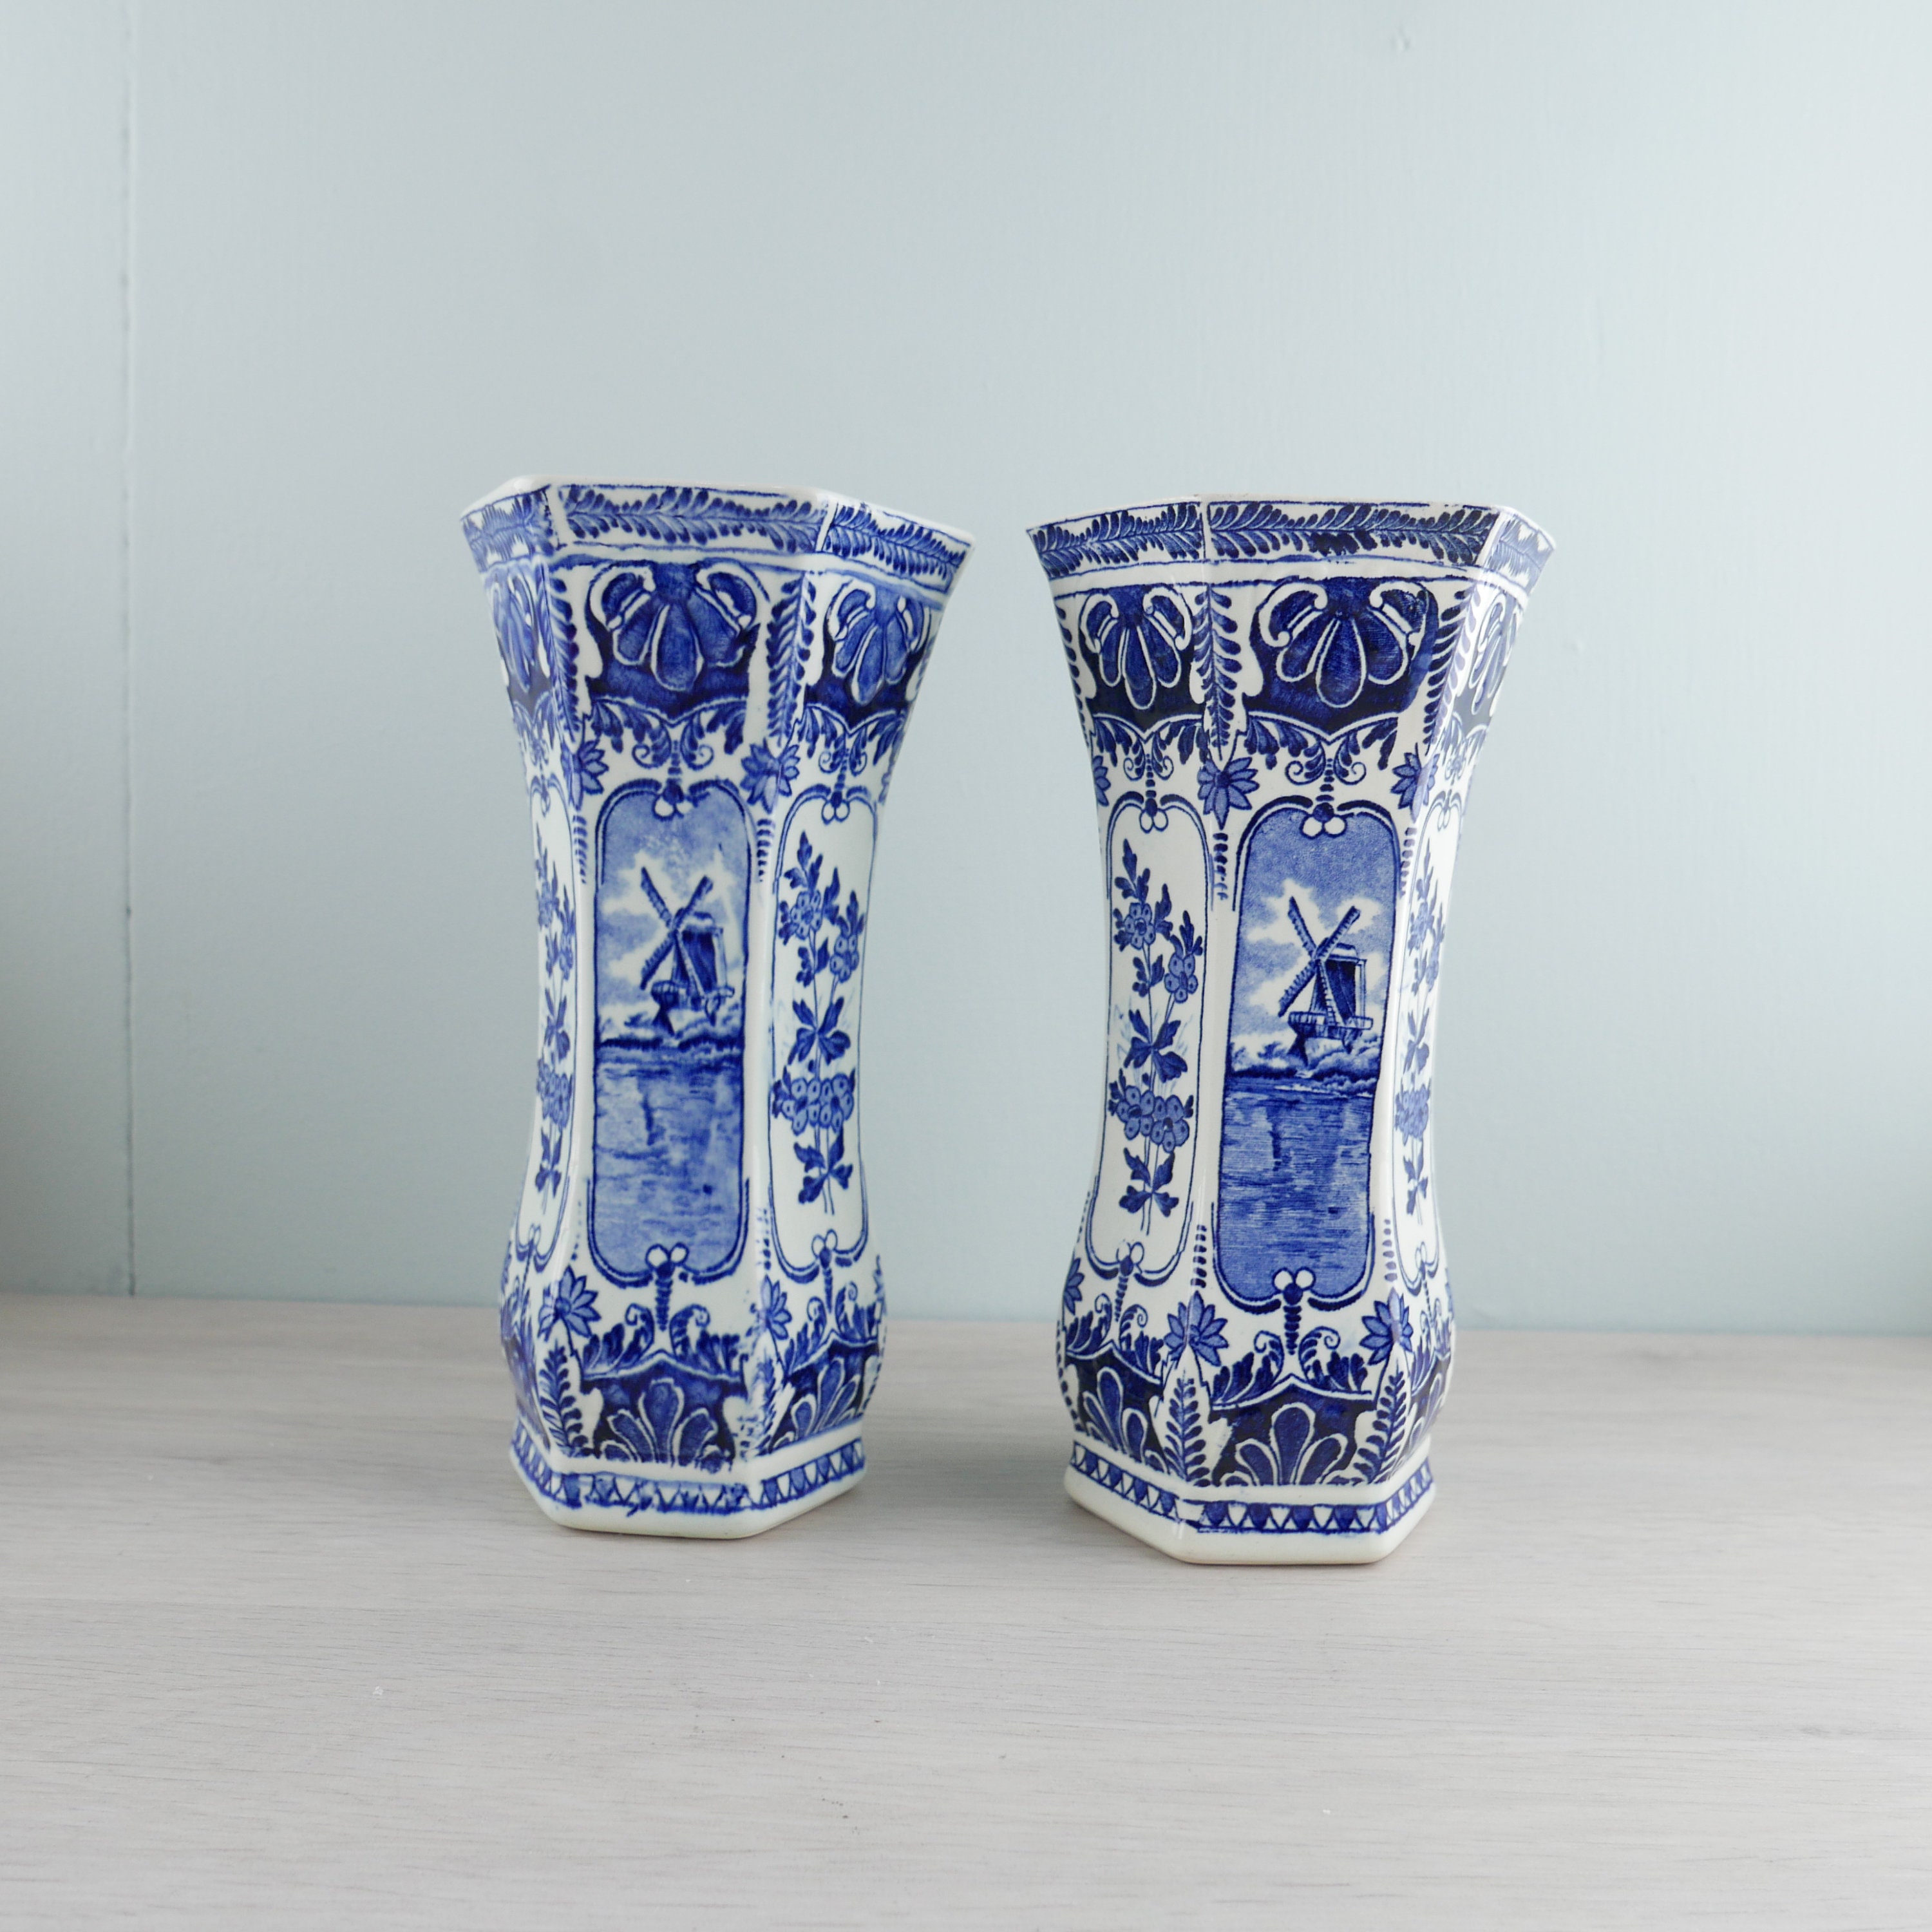 Productie Blij Correspondent Delfts Blauw set van 2 aardewerk vazen Royal Sphinx - Etsy Nederland